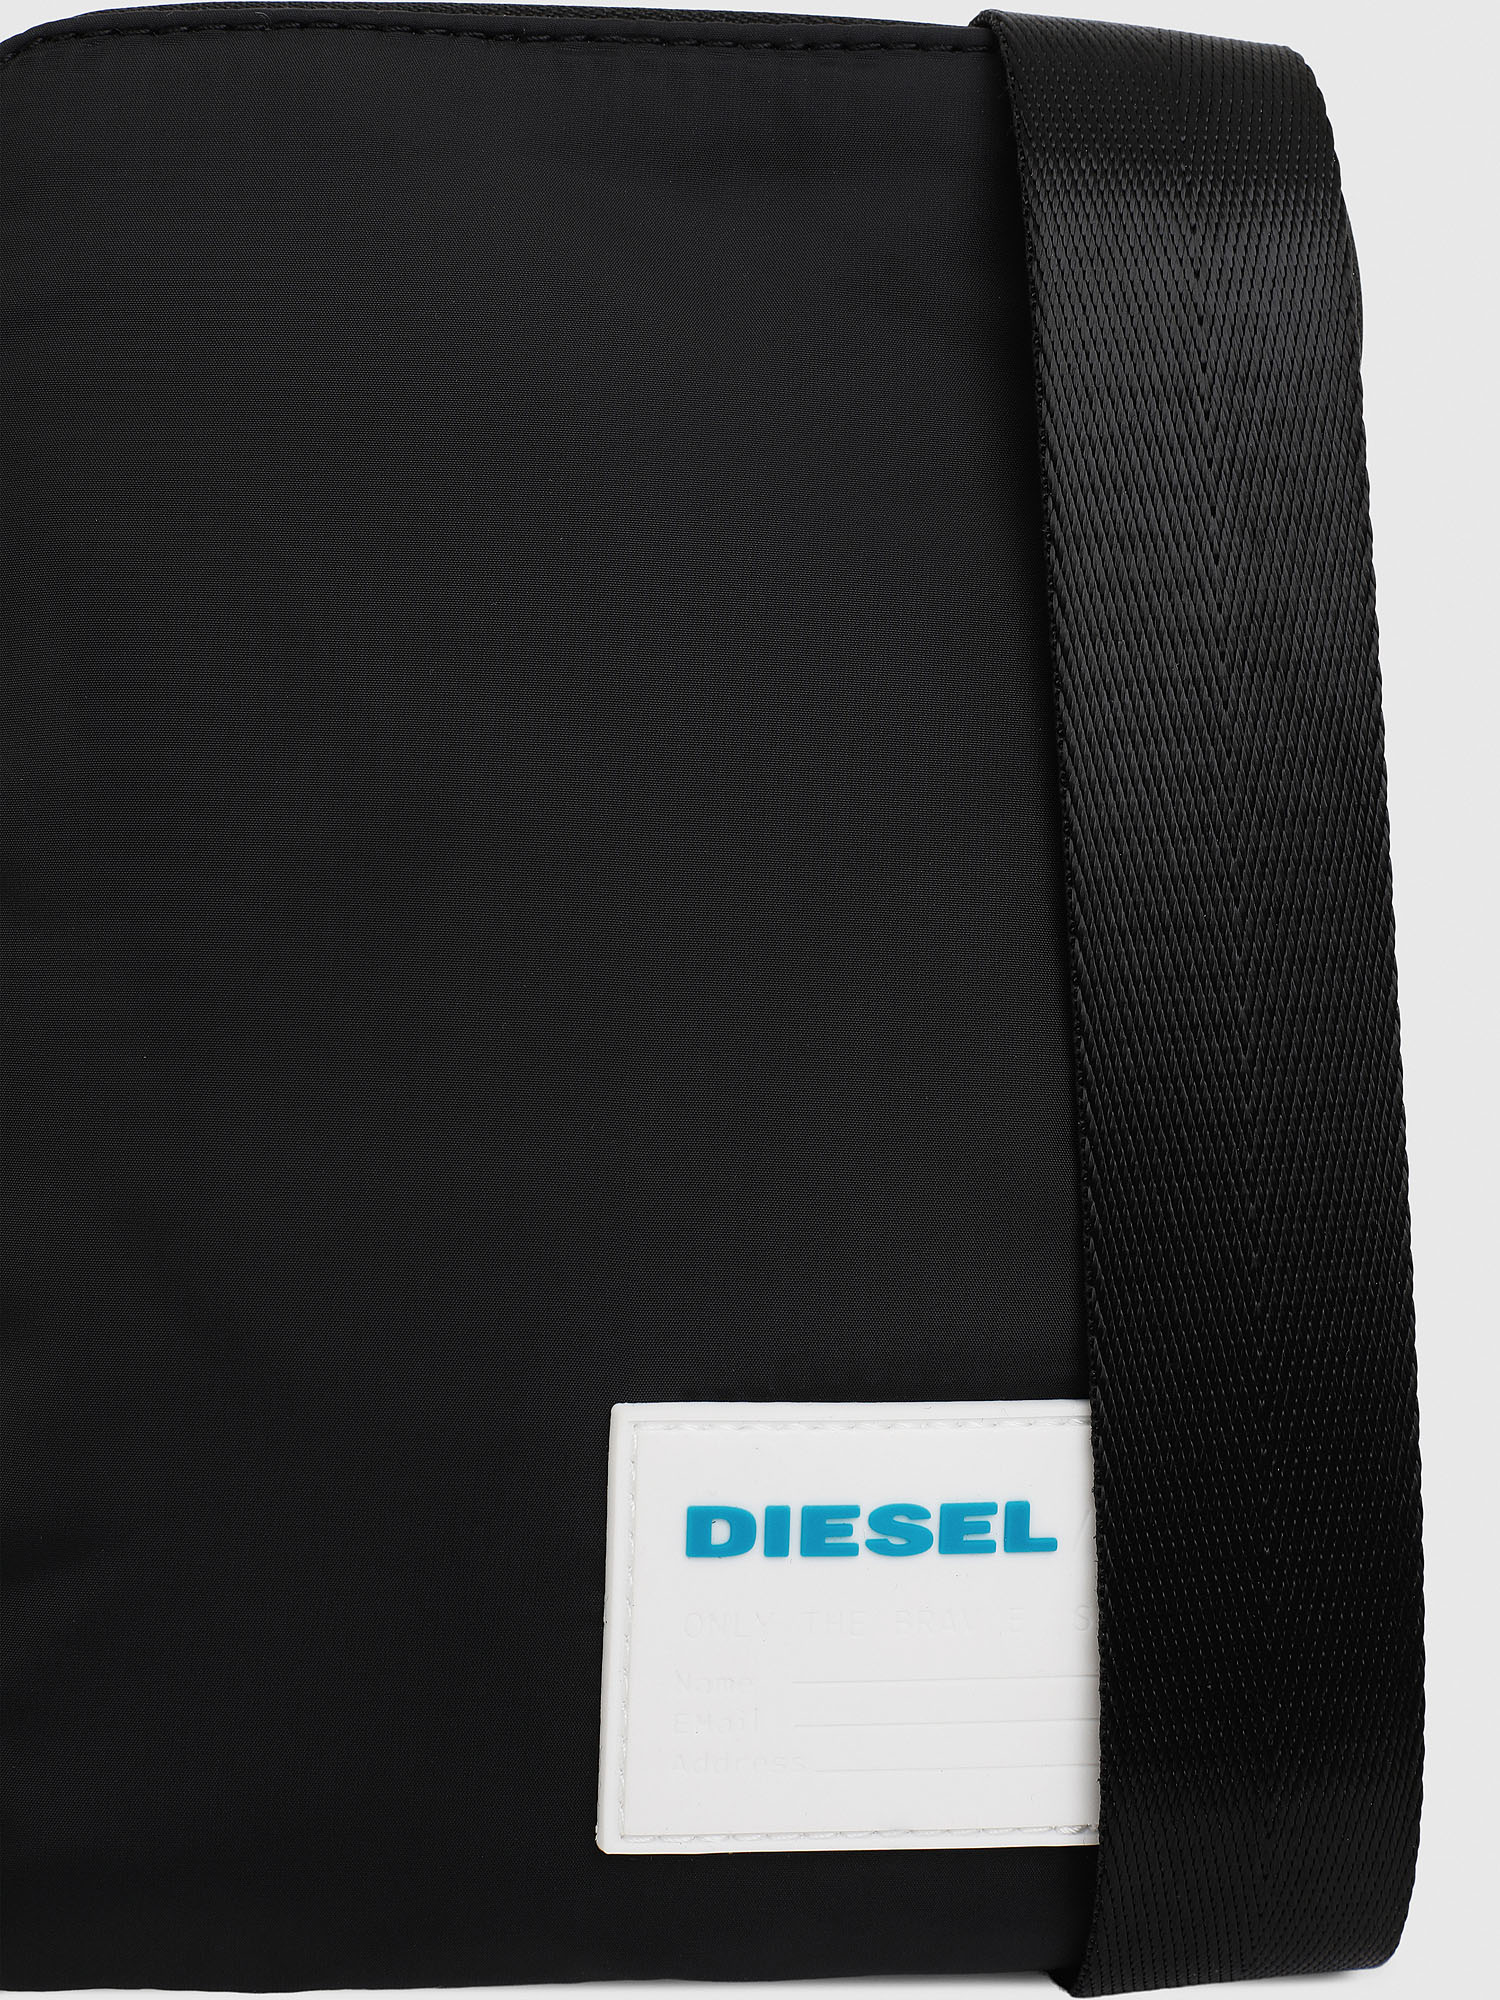 Diesel - F-DISCOVER CROSS, Dark Blue - Image 5